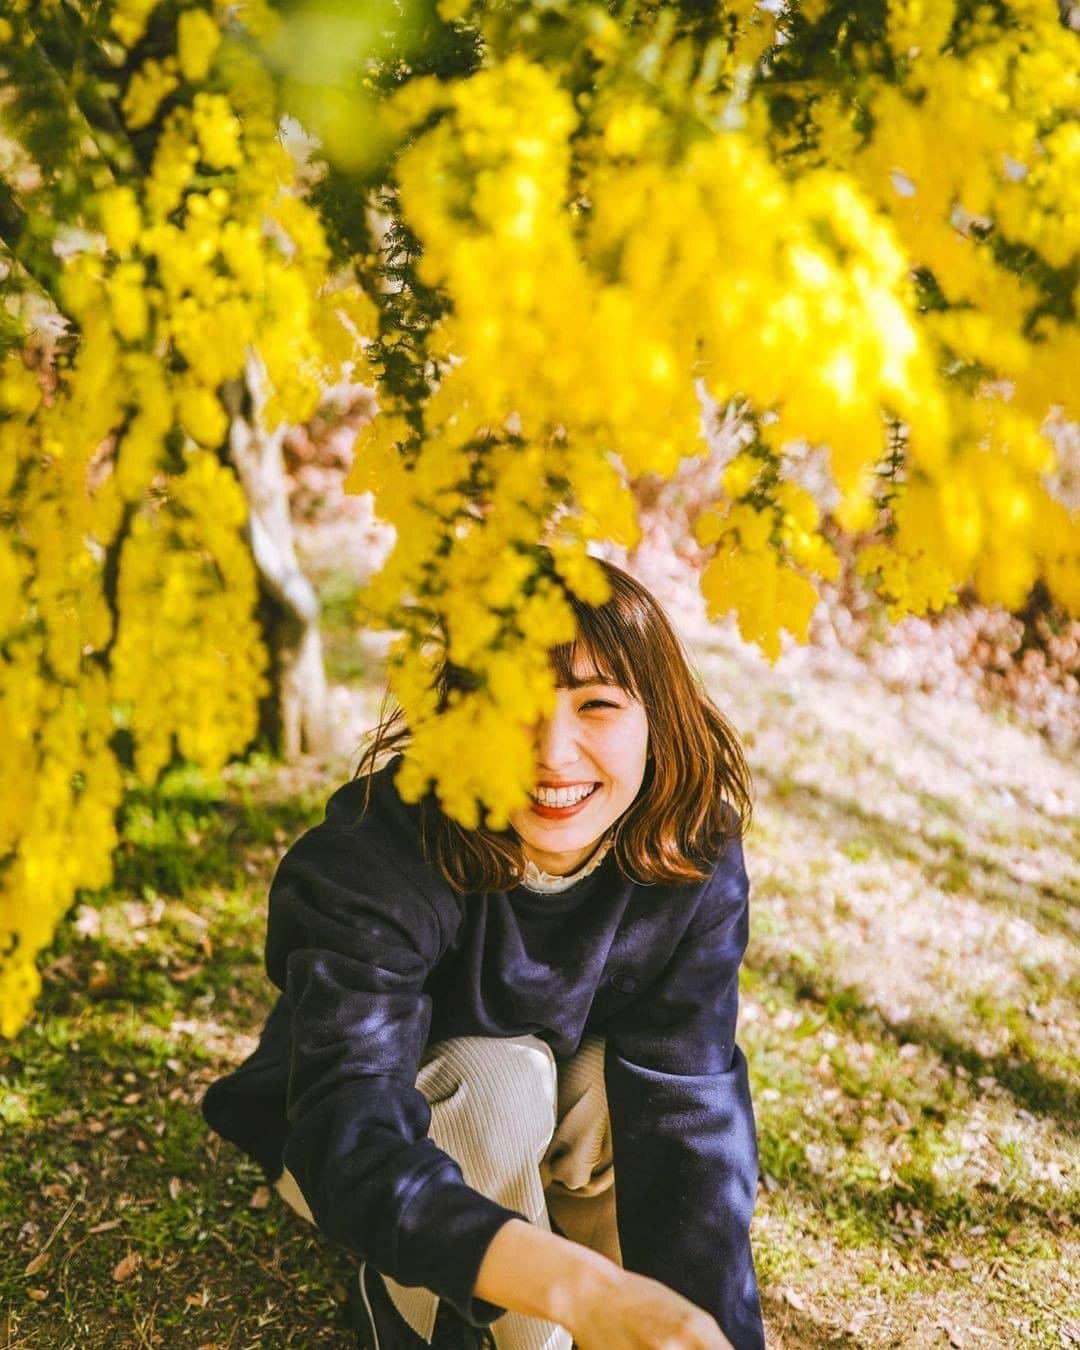 asoview! のインスタグラム：「× Hiro.photo（@ya_hi.photo ） 到津の森公園に咲き誇る、 黄色いミモザに笑顔が溢れます😊 . ミモザの開花時期は2月中旬〜3月中旬。 . 黄色い花々に包まれて、 春の訪れを感じてみてはいかがでしょうか？ . ======================= 場所：到津の森公園 住所：福岡県北九州市小倉北区上到津４－１－８ アクセス：北九州都市高速「山路IC」より車で15分 ======================= . 今週末のおでかけにお役立てください♪ . #アソビュー で想い出を共有しよう！ 素敵な投稿はストーリーズやウォールでご紹介します✨✨ . #ダレカニミセタイフウケイ #ダレカニミセタイケシキ #ファインダー越しの私の世界 #ファインダー越の風景 #お写んぽ #カメラ散歩 #カメラのある生活 #カメラ女子 #写真が好きな人と繋がりたい #旅行好きな人と繋がりたい #国内旅行 #国内旅行好き #インスタ探検隊 #日本再発見 #キリトリセカイ #広がり同盟 #毎日が笑顔で溢れてる #その瞬間に物語を #広がり同盟 #楽天もう一度行きたい旅 #サンクチュアリ出版フォトコンテスト #シブセイcurbon写真展 #私が紡ぐ物語 #jp_portrait部 #到津の森公園 #ミモザ #インスタ映え」